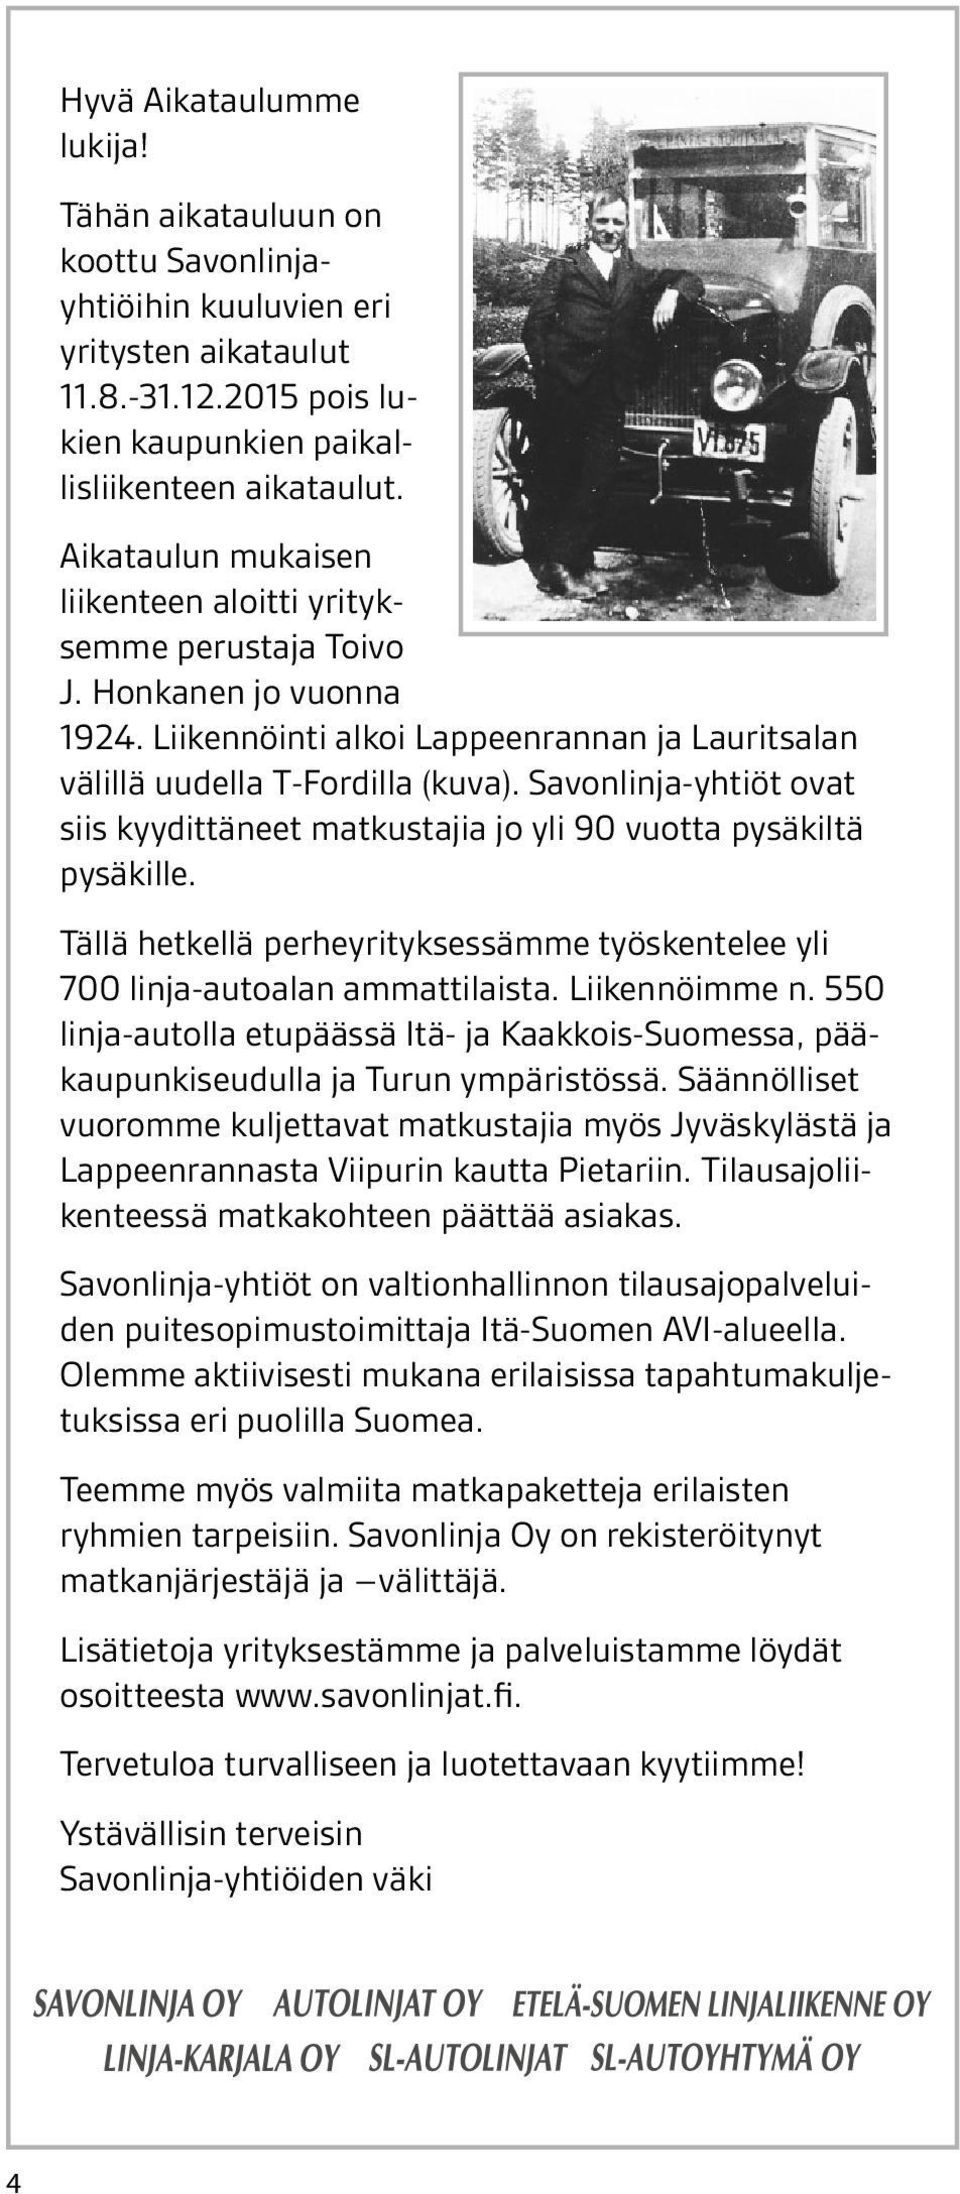 on Lisätietoja koottu Savonlinjayhtiöihin kuuluvien löydät osoit- eri yrityksestämme ja palveluistamme teesta yritysten www.savonlinja.fi aikataulut. 11.8.-31.12.